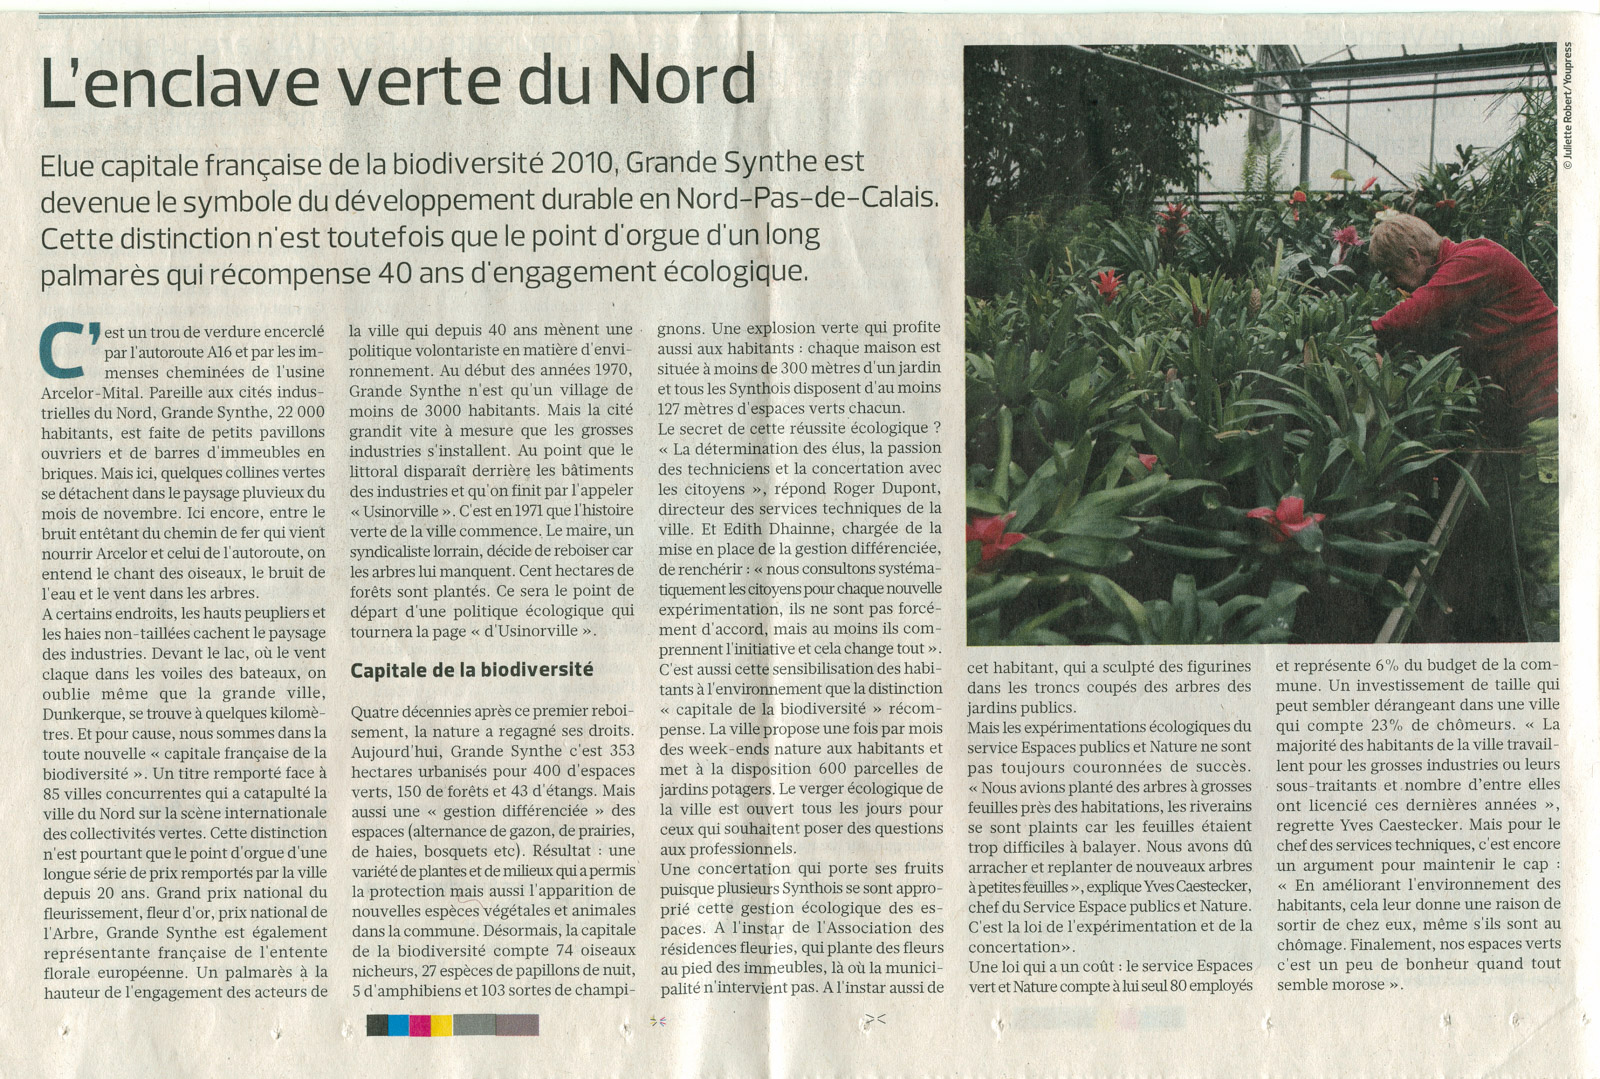 Le Figaro - 23 novembre 2010